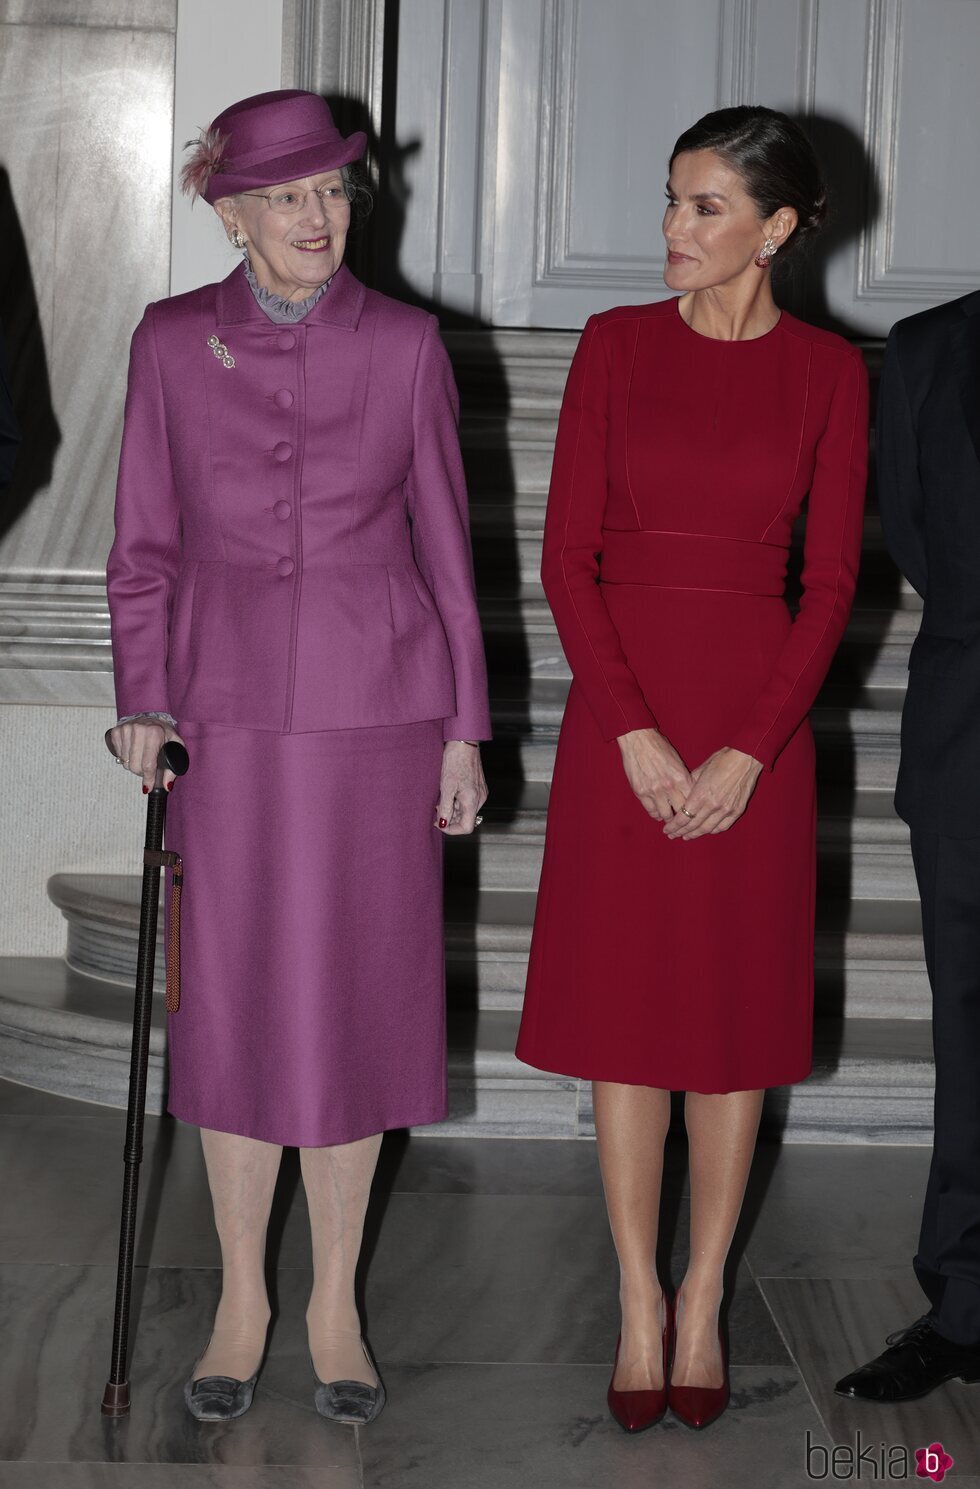 Margarita de Dinamarca y la Reina Letizia en la ceremonia de bienvenida a los Reyes Felipe y Letizia en Amalienborg